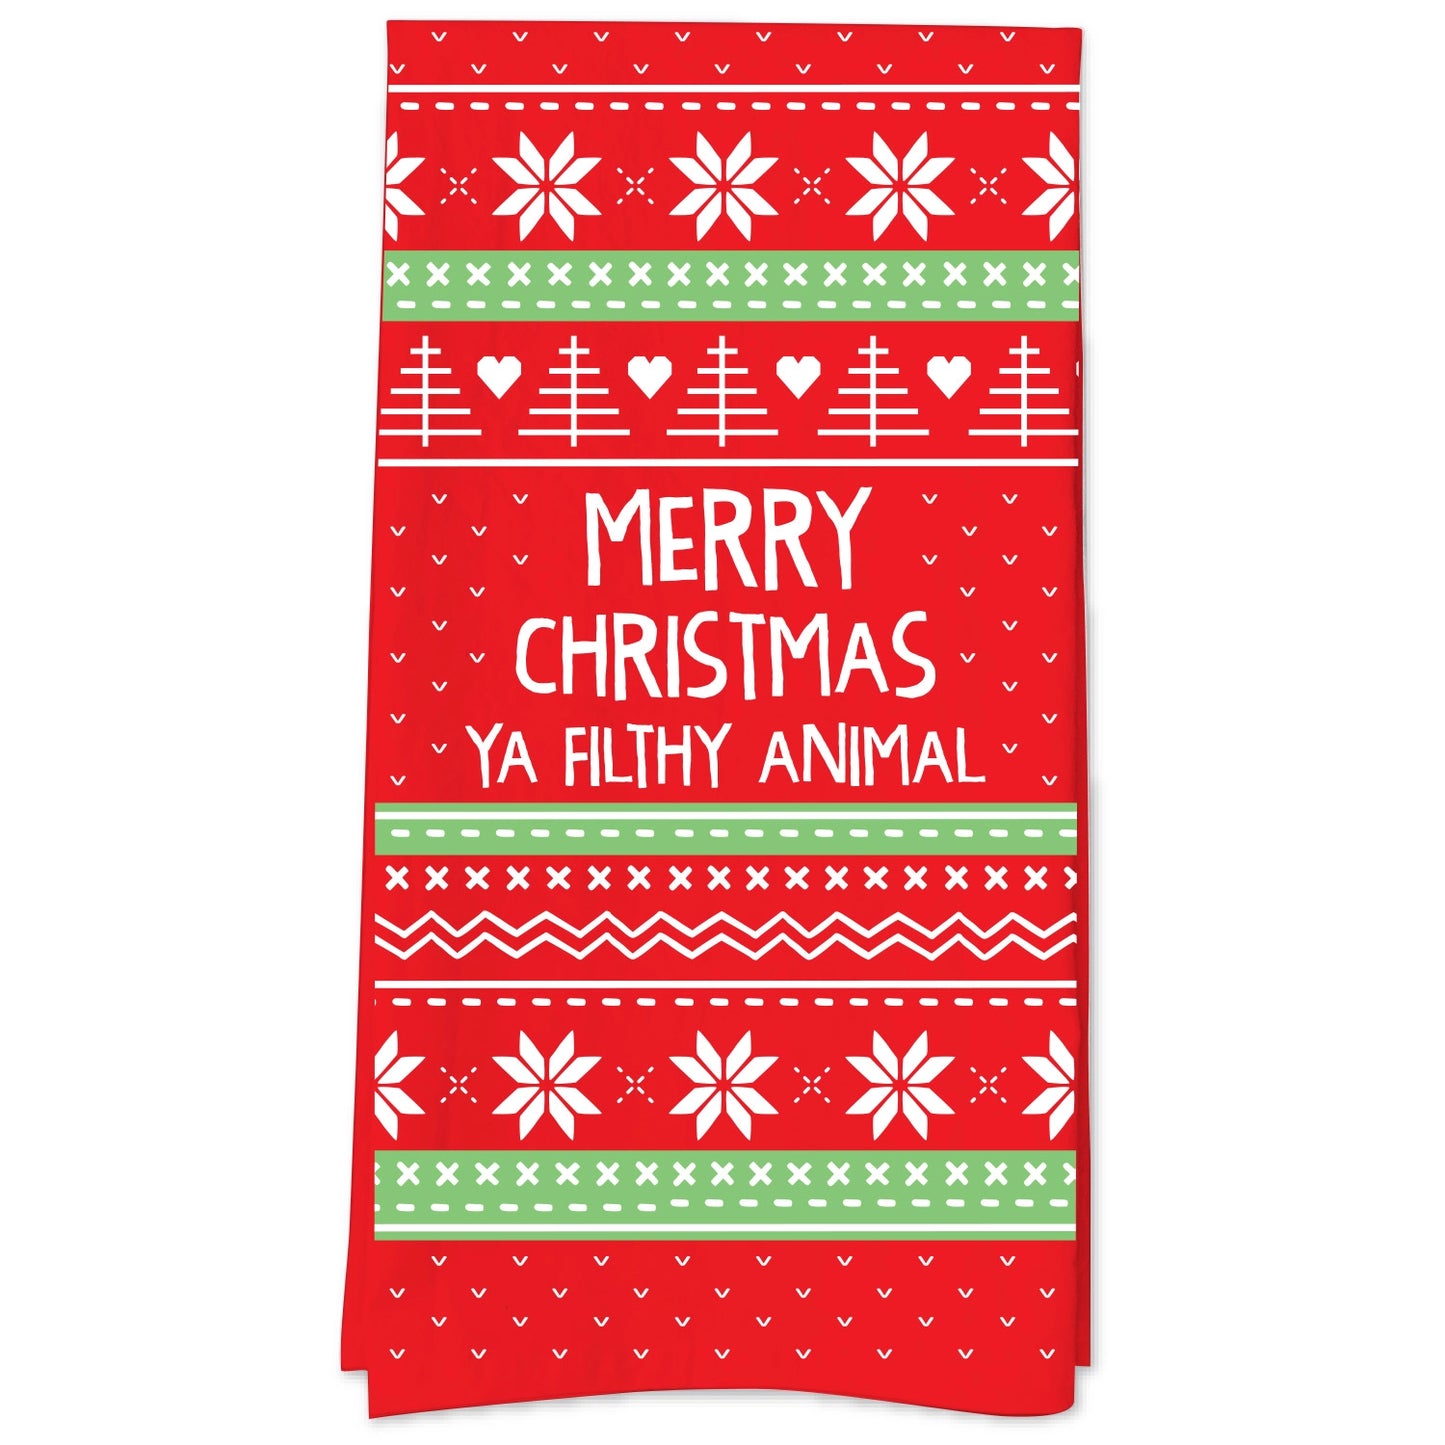 Merry Christmas Ya Filthy Animal Tea Towel